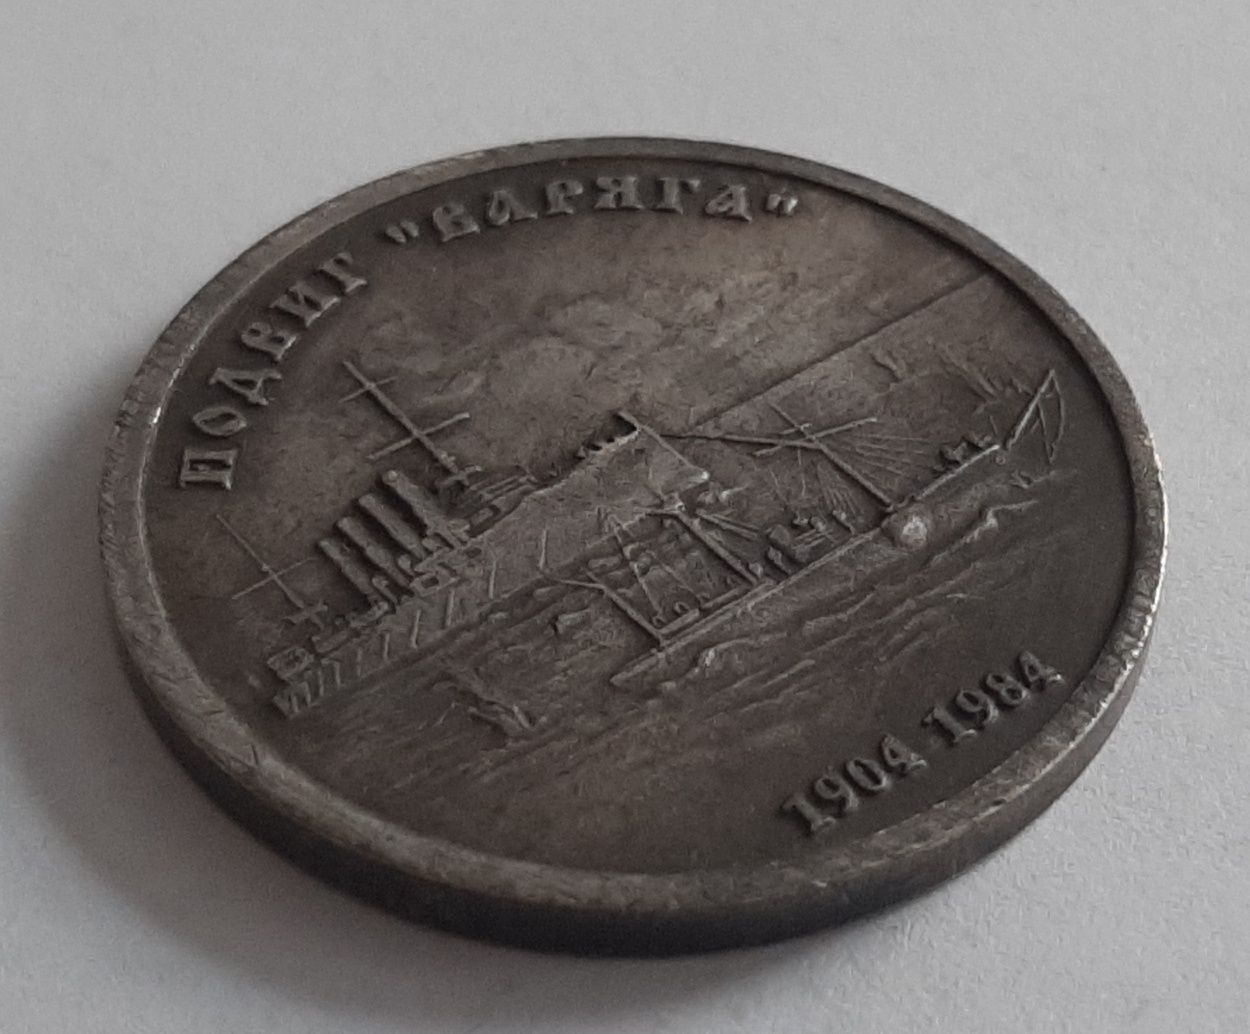 Moneta 1 rubel ZSRR 1984 "Varyag exploit 1904"